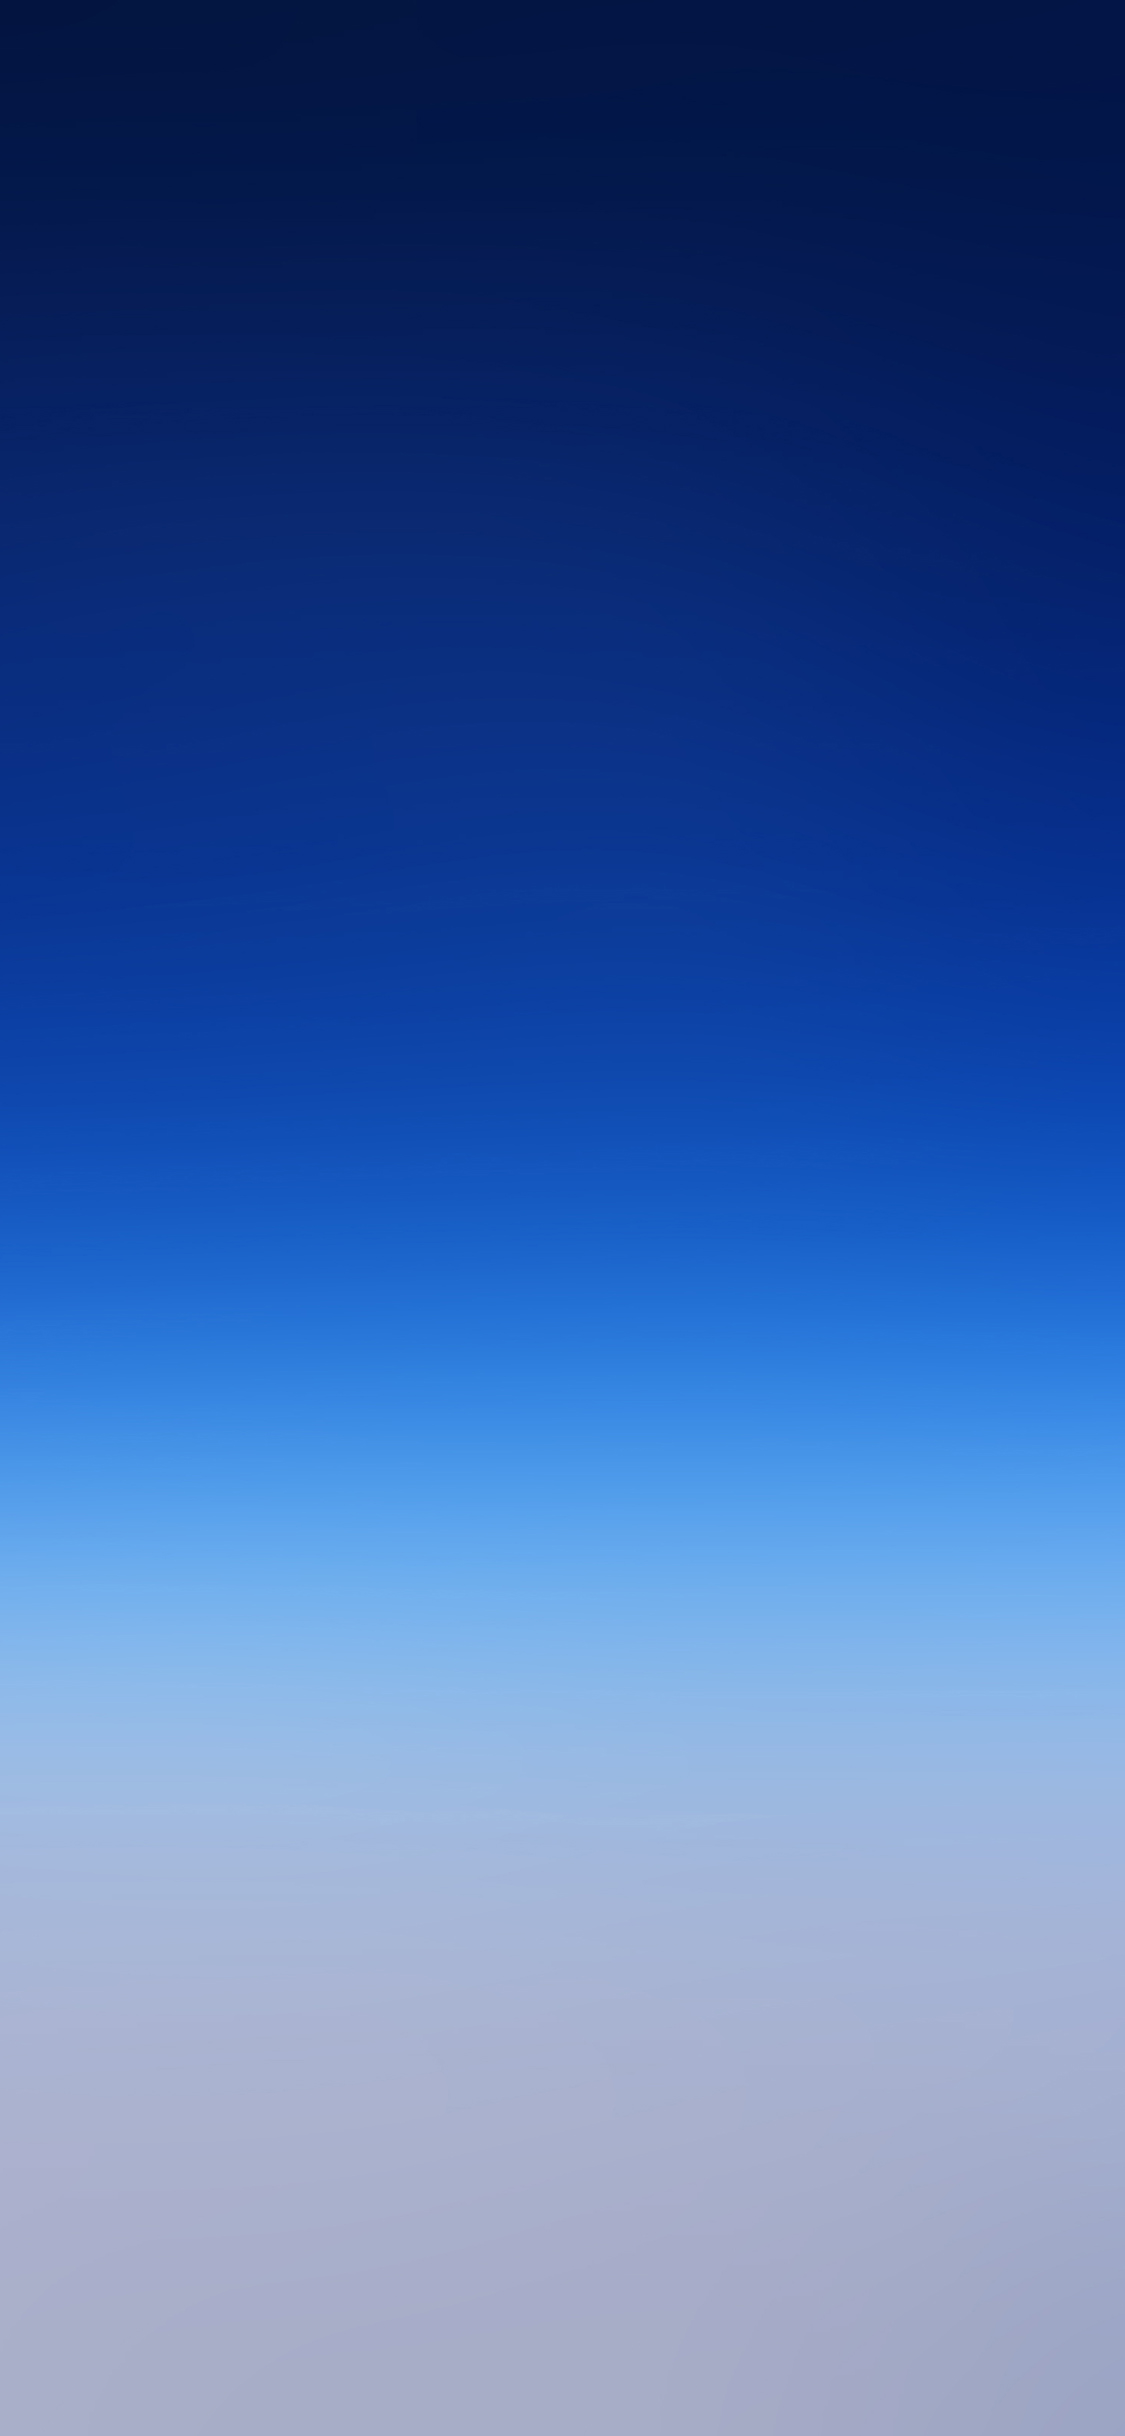 wallpaper blue blue sky blur